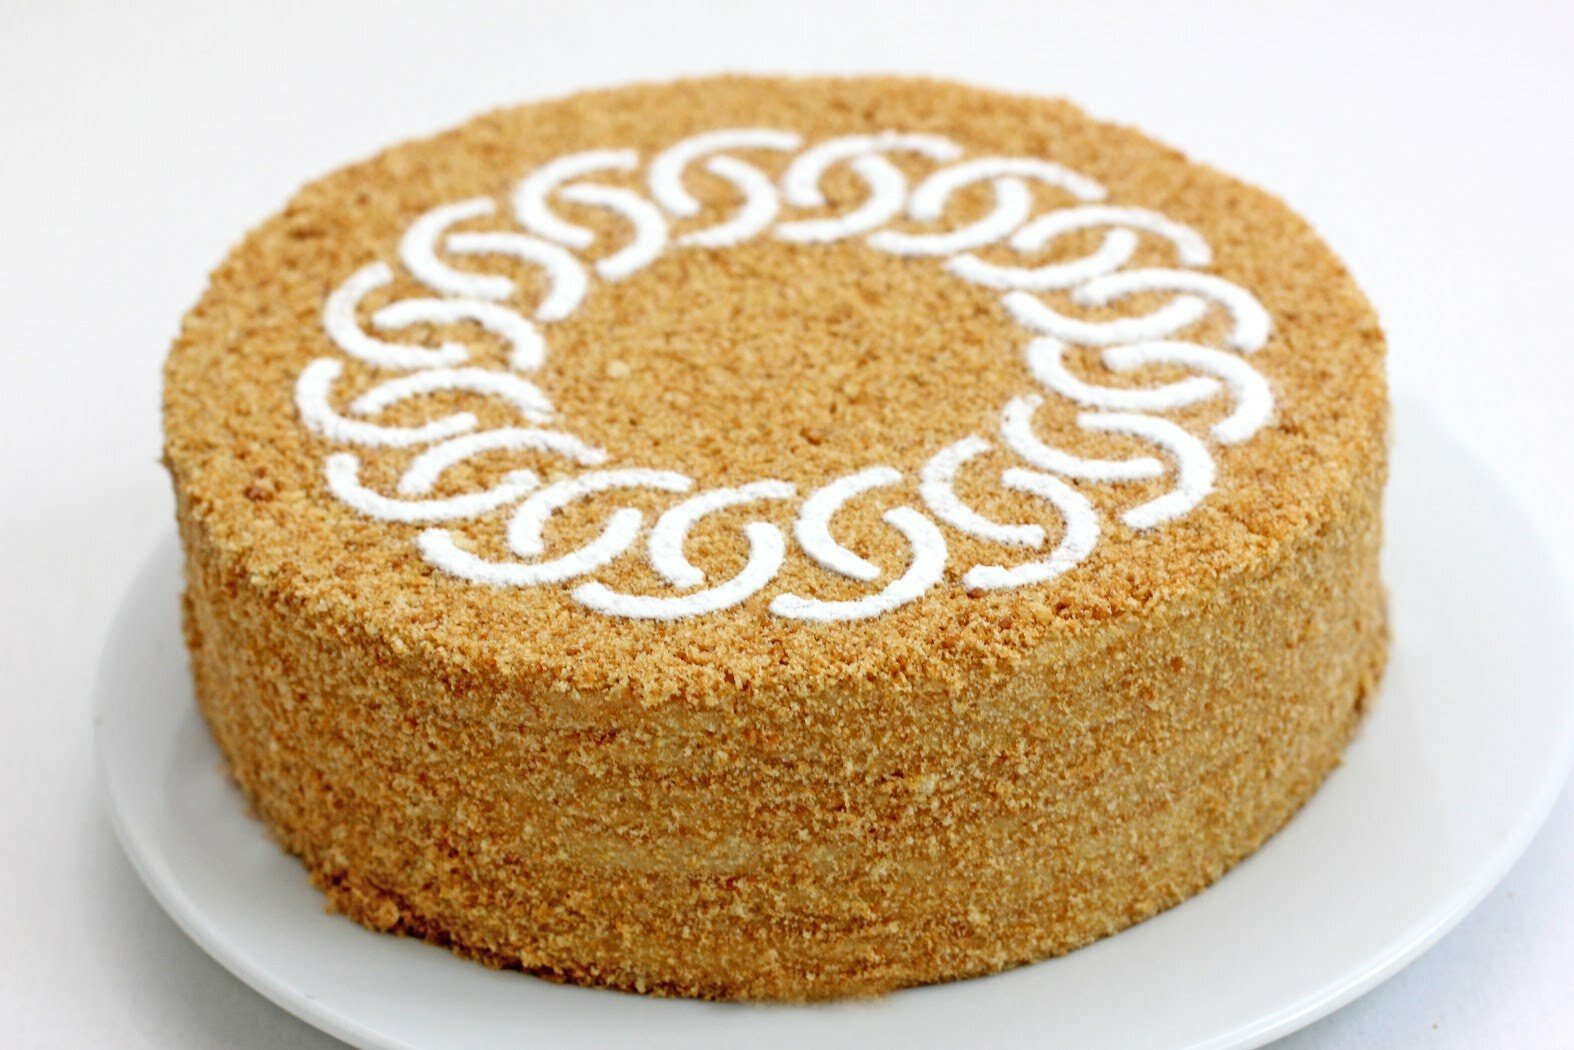 Торт "Медовик": классический рецепт с фото 